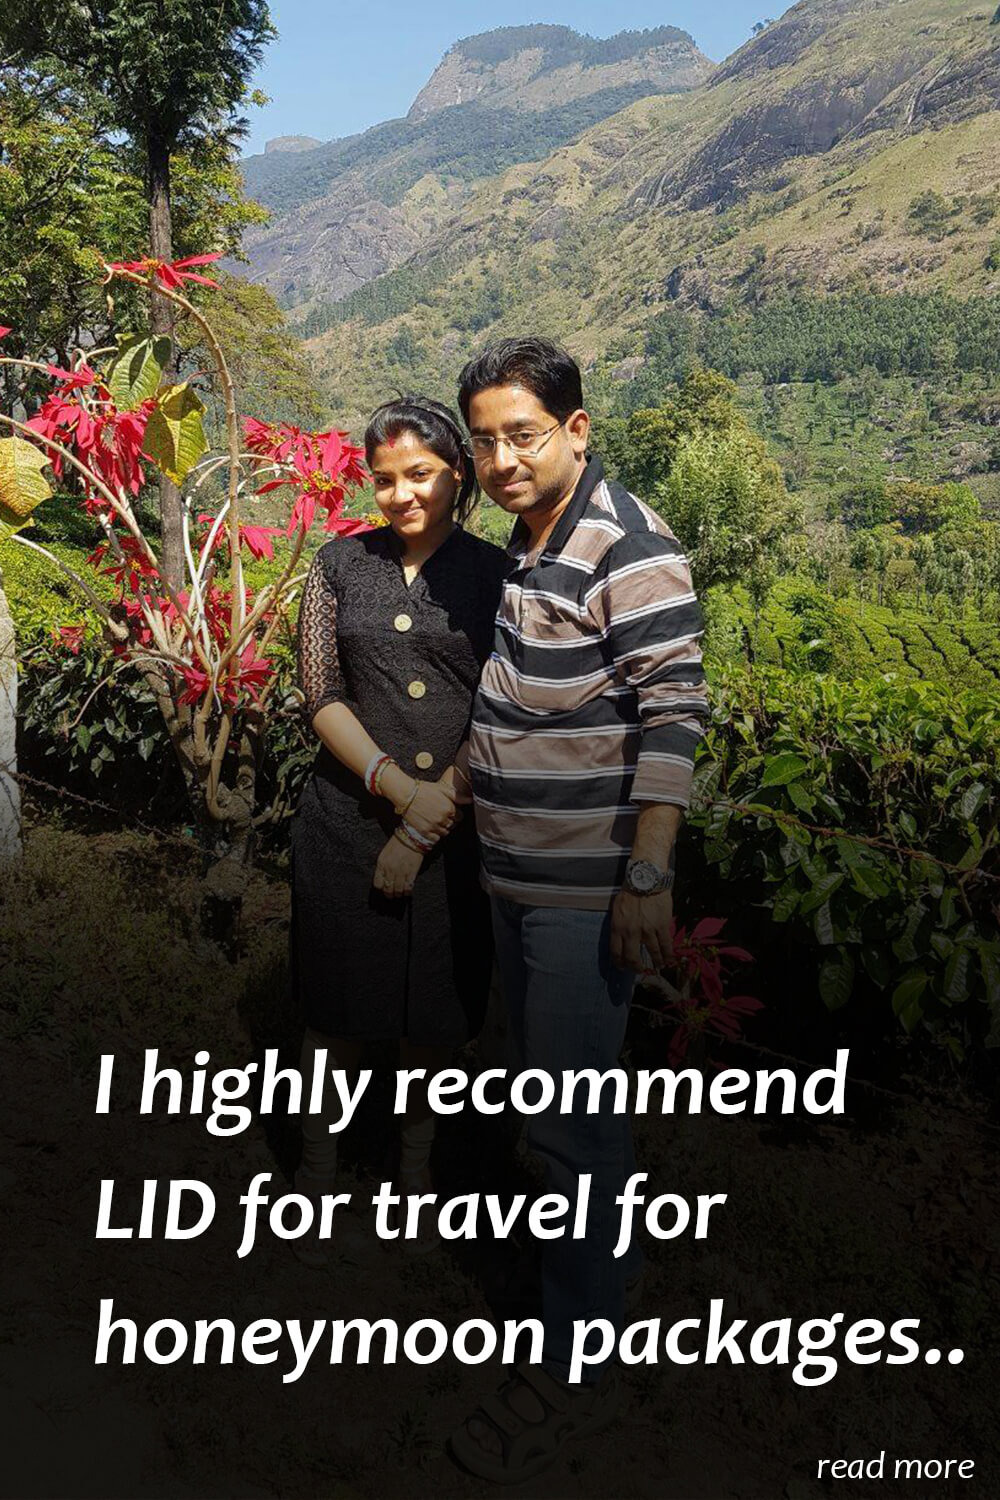 kerala honeymoon packages by LiD Travel